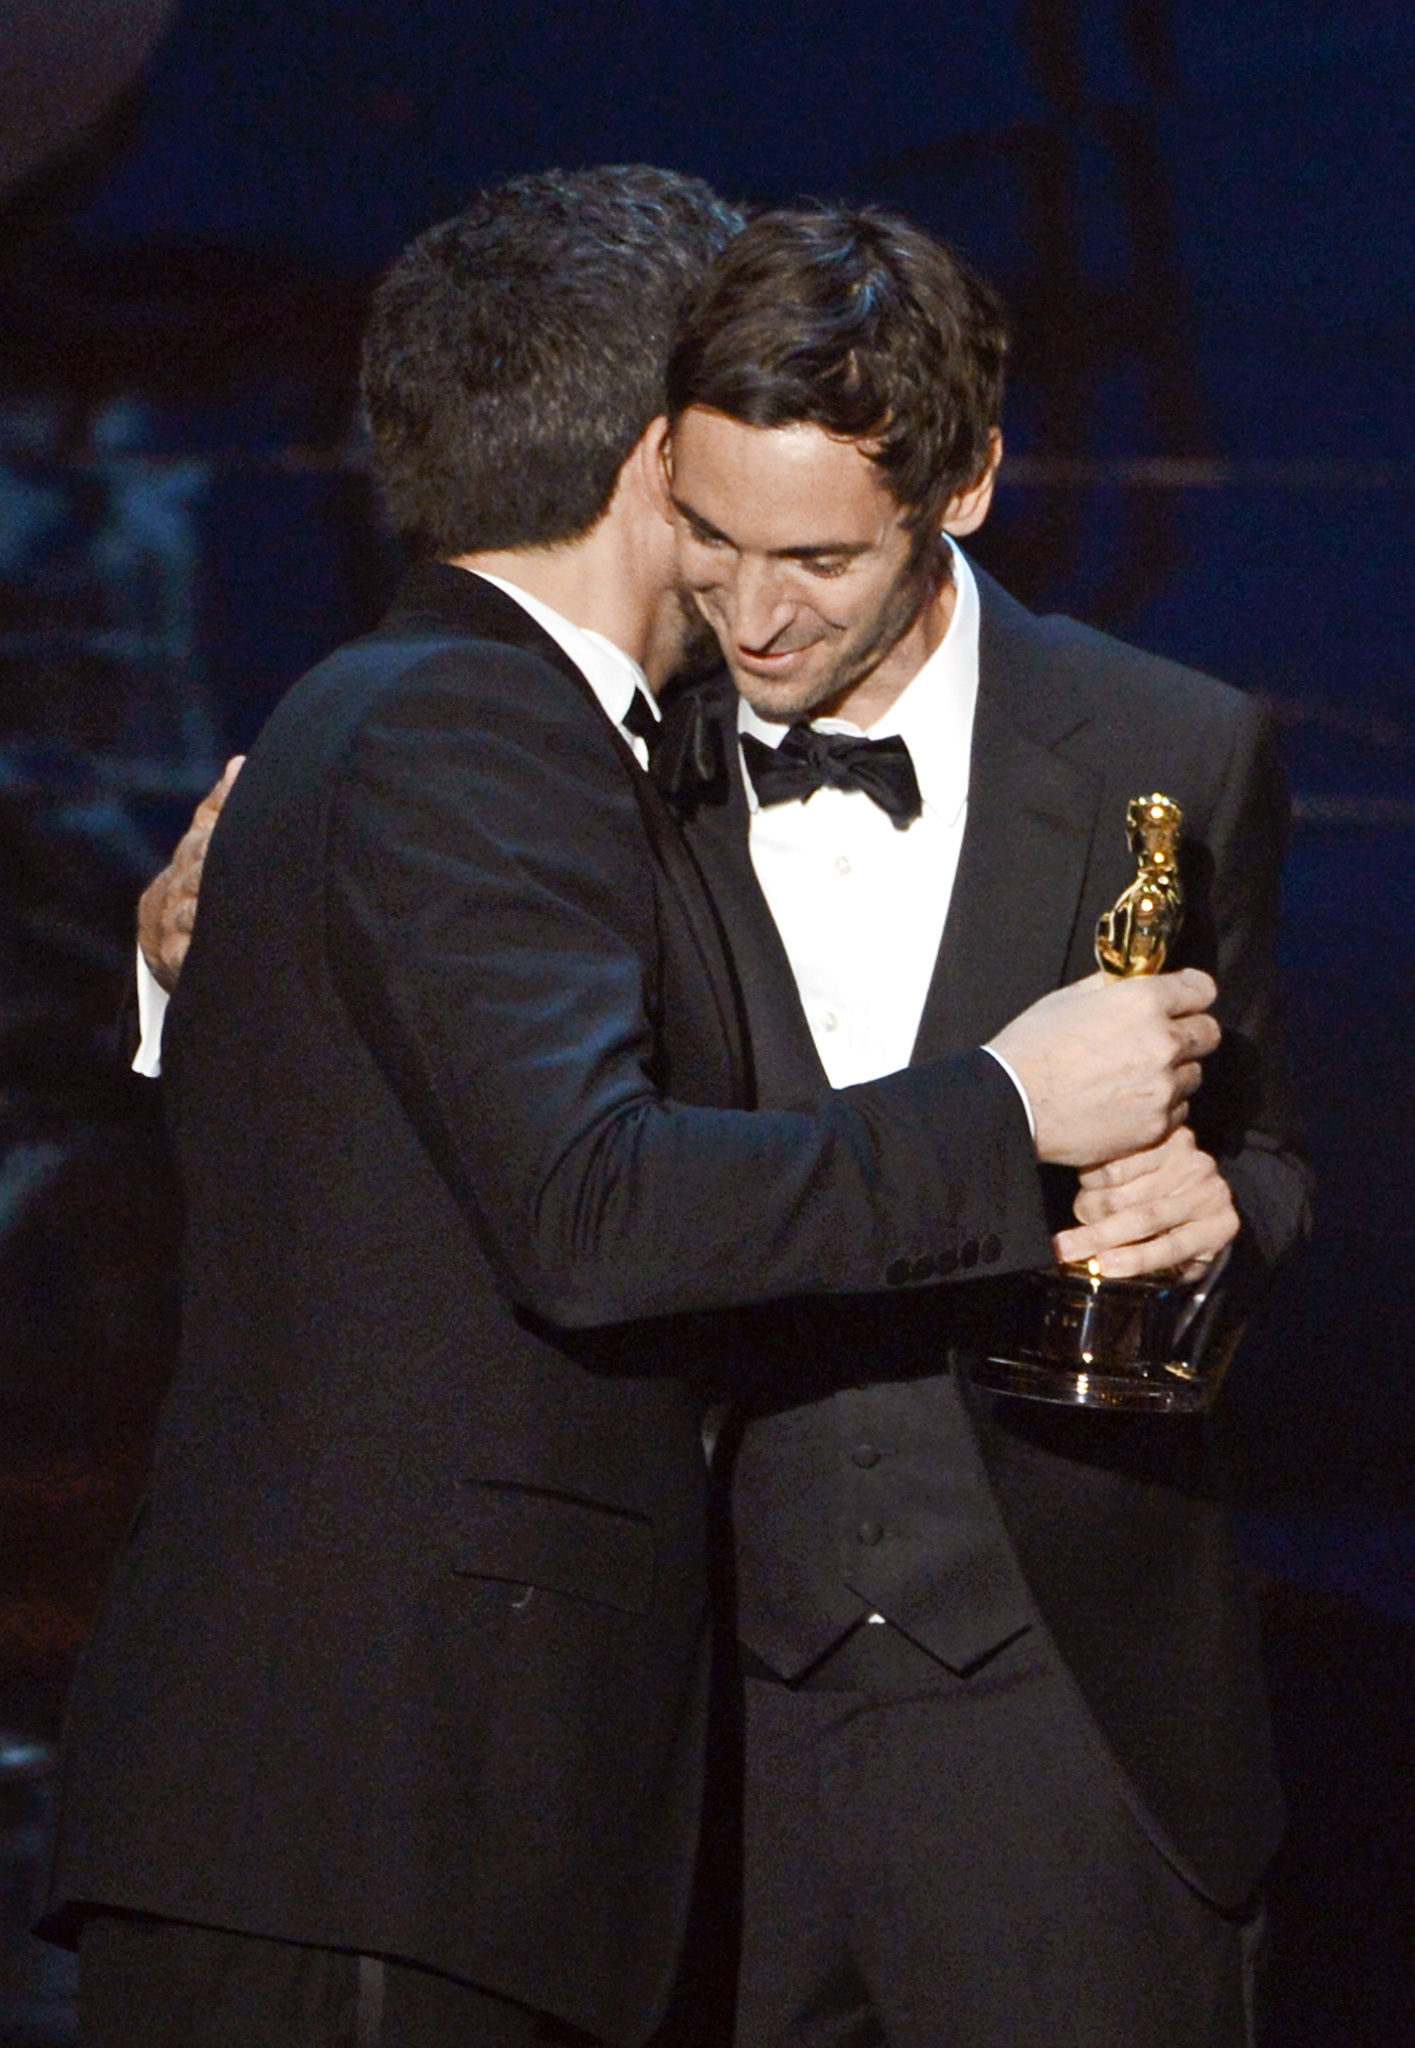 Ben Affleck and Malik Bendjelloul at event of The Oscars (2013)